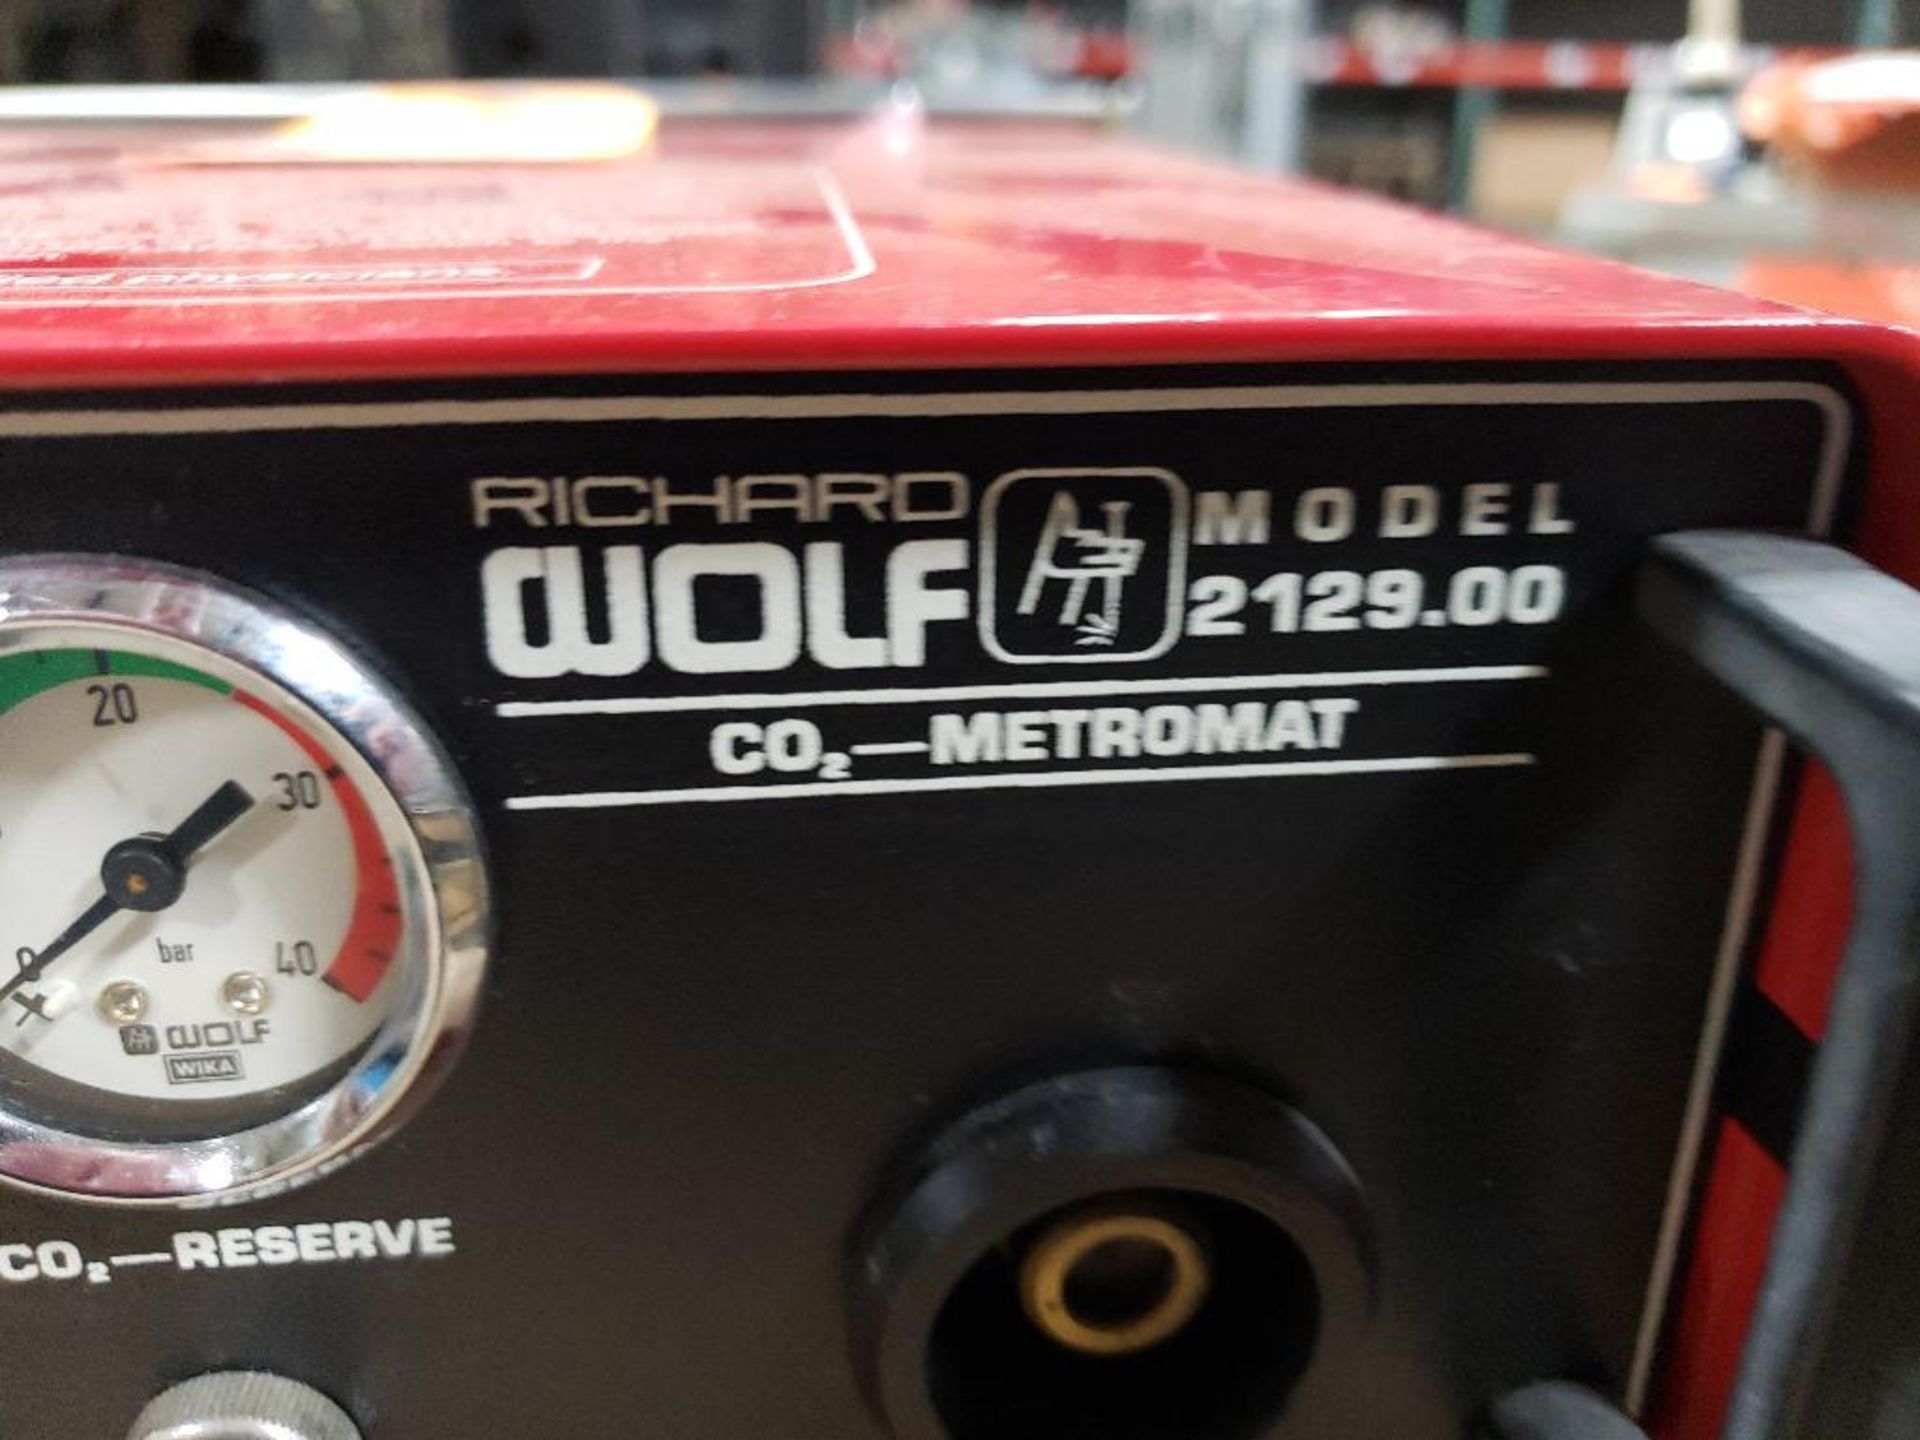 Richard Wolf metromat. Model 2129.00. - Image 3 of 4